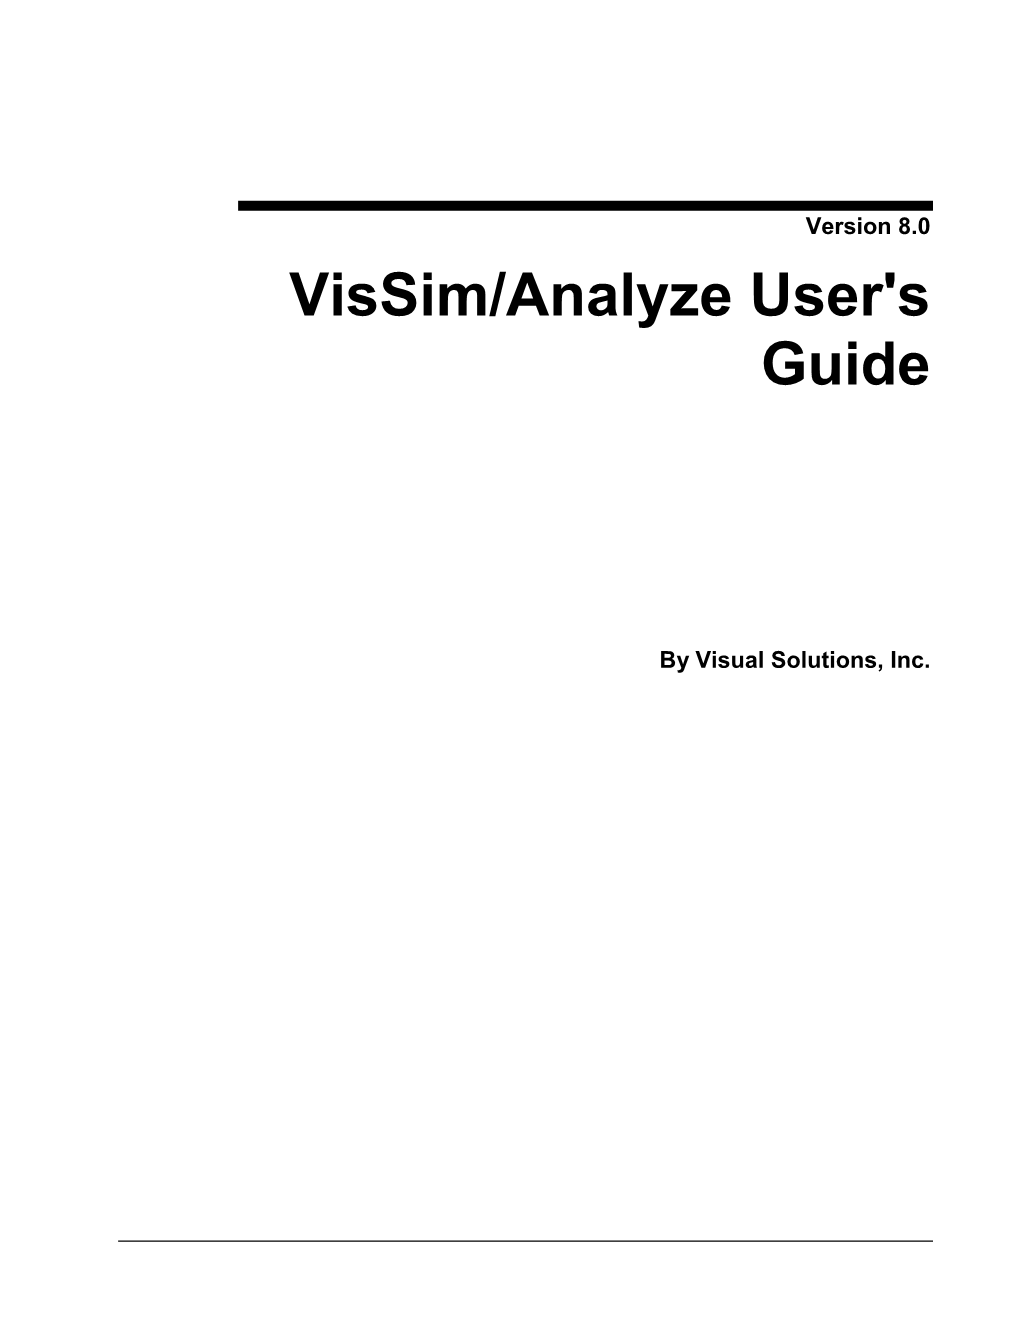 Vissim/Analyze User's Guide